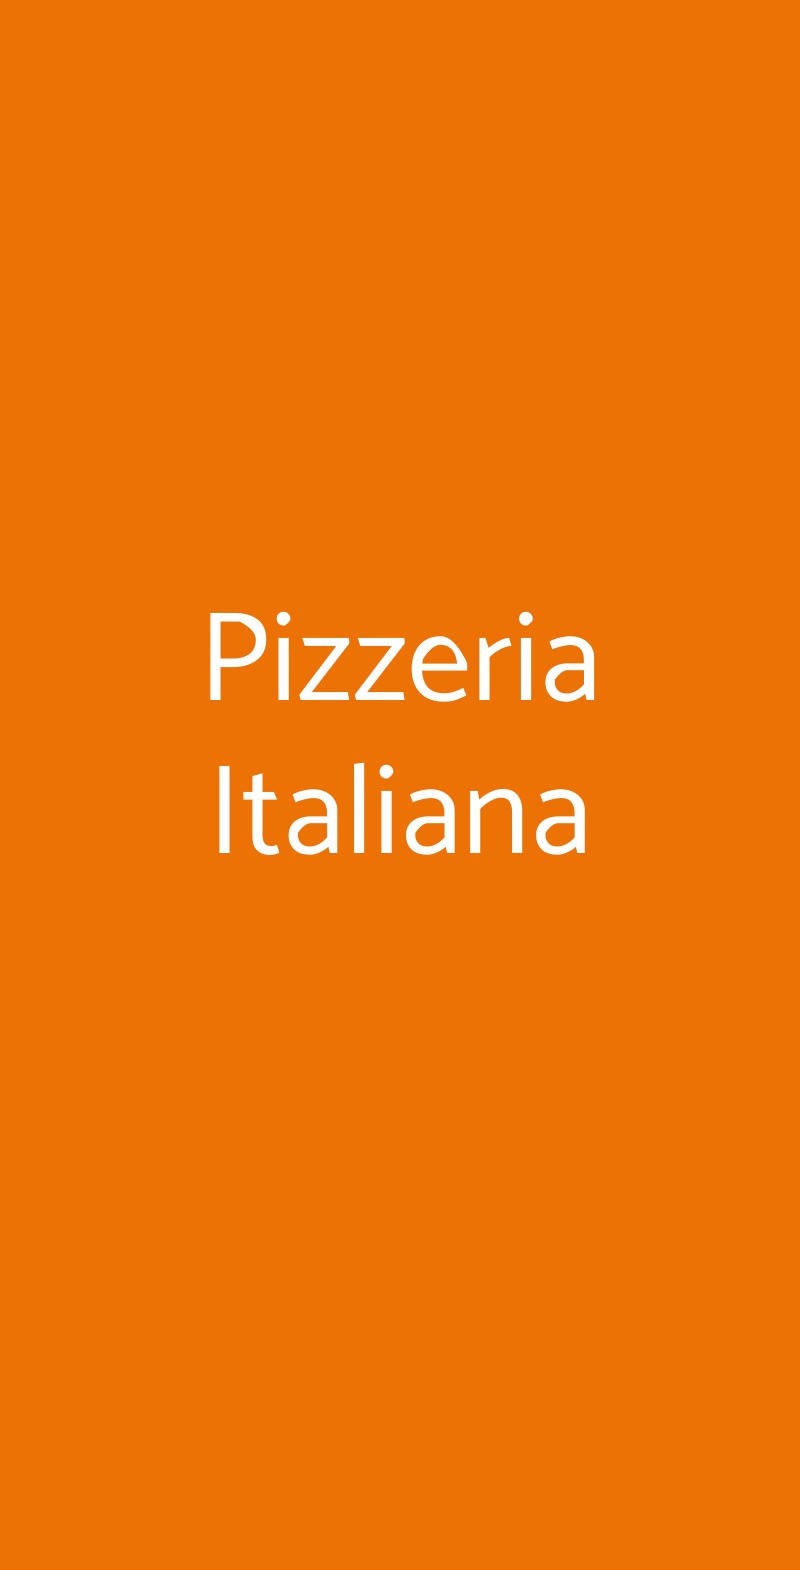 Pizzeria Italiana Milano menù 1 pagina